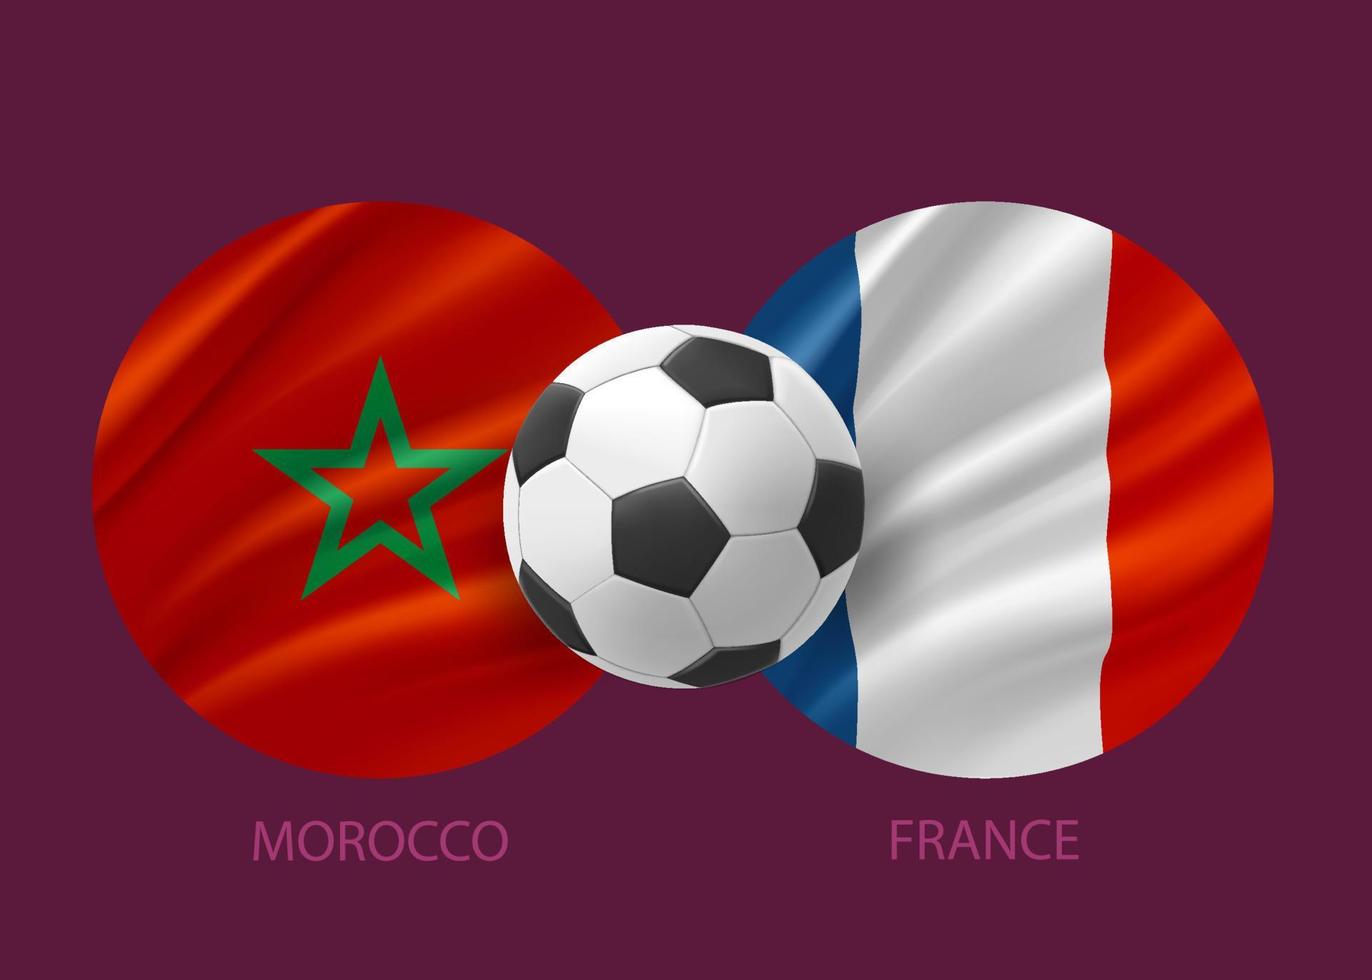 Marokko vs Frankrijk Amerikaans voetbal bij elkaar passen concept. 3d vector illustratie